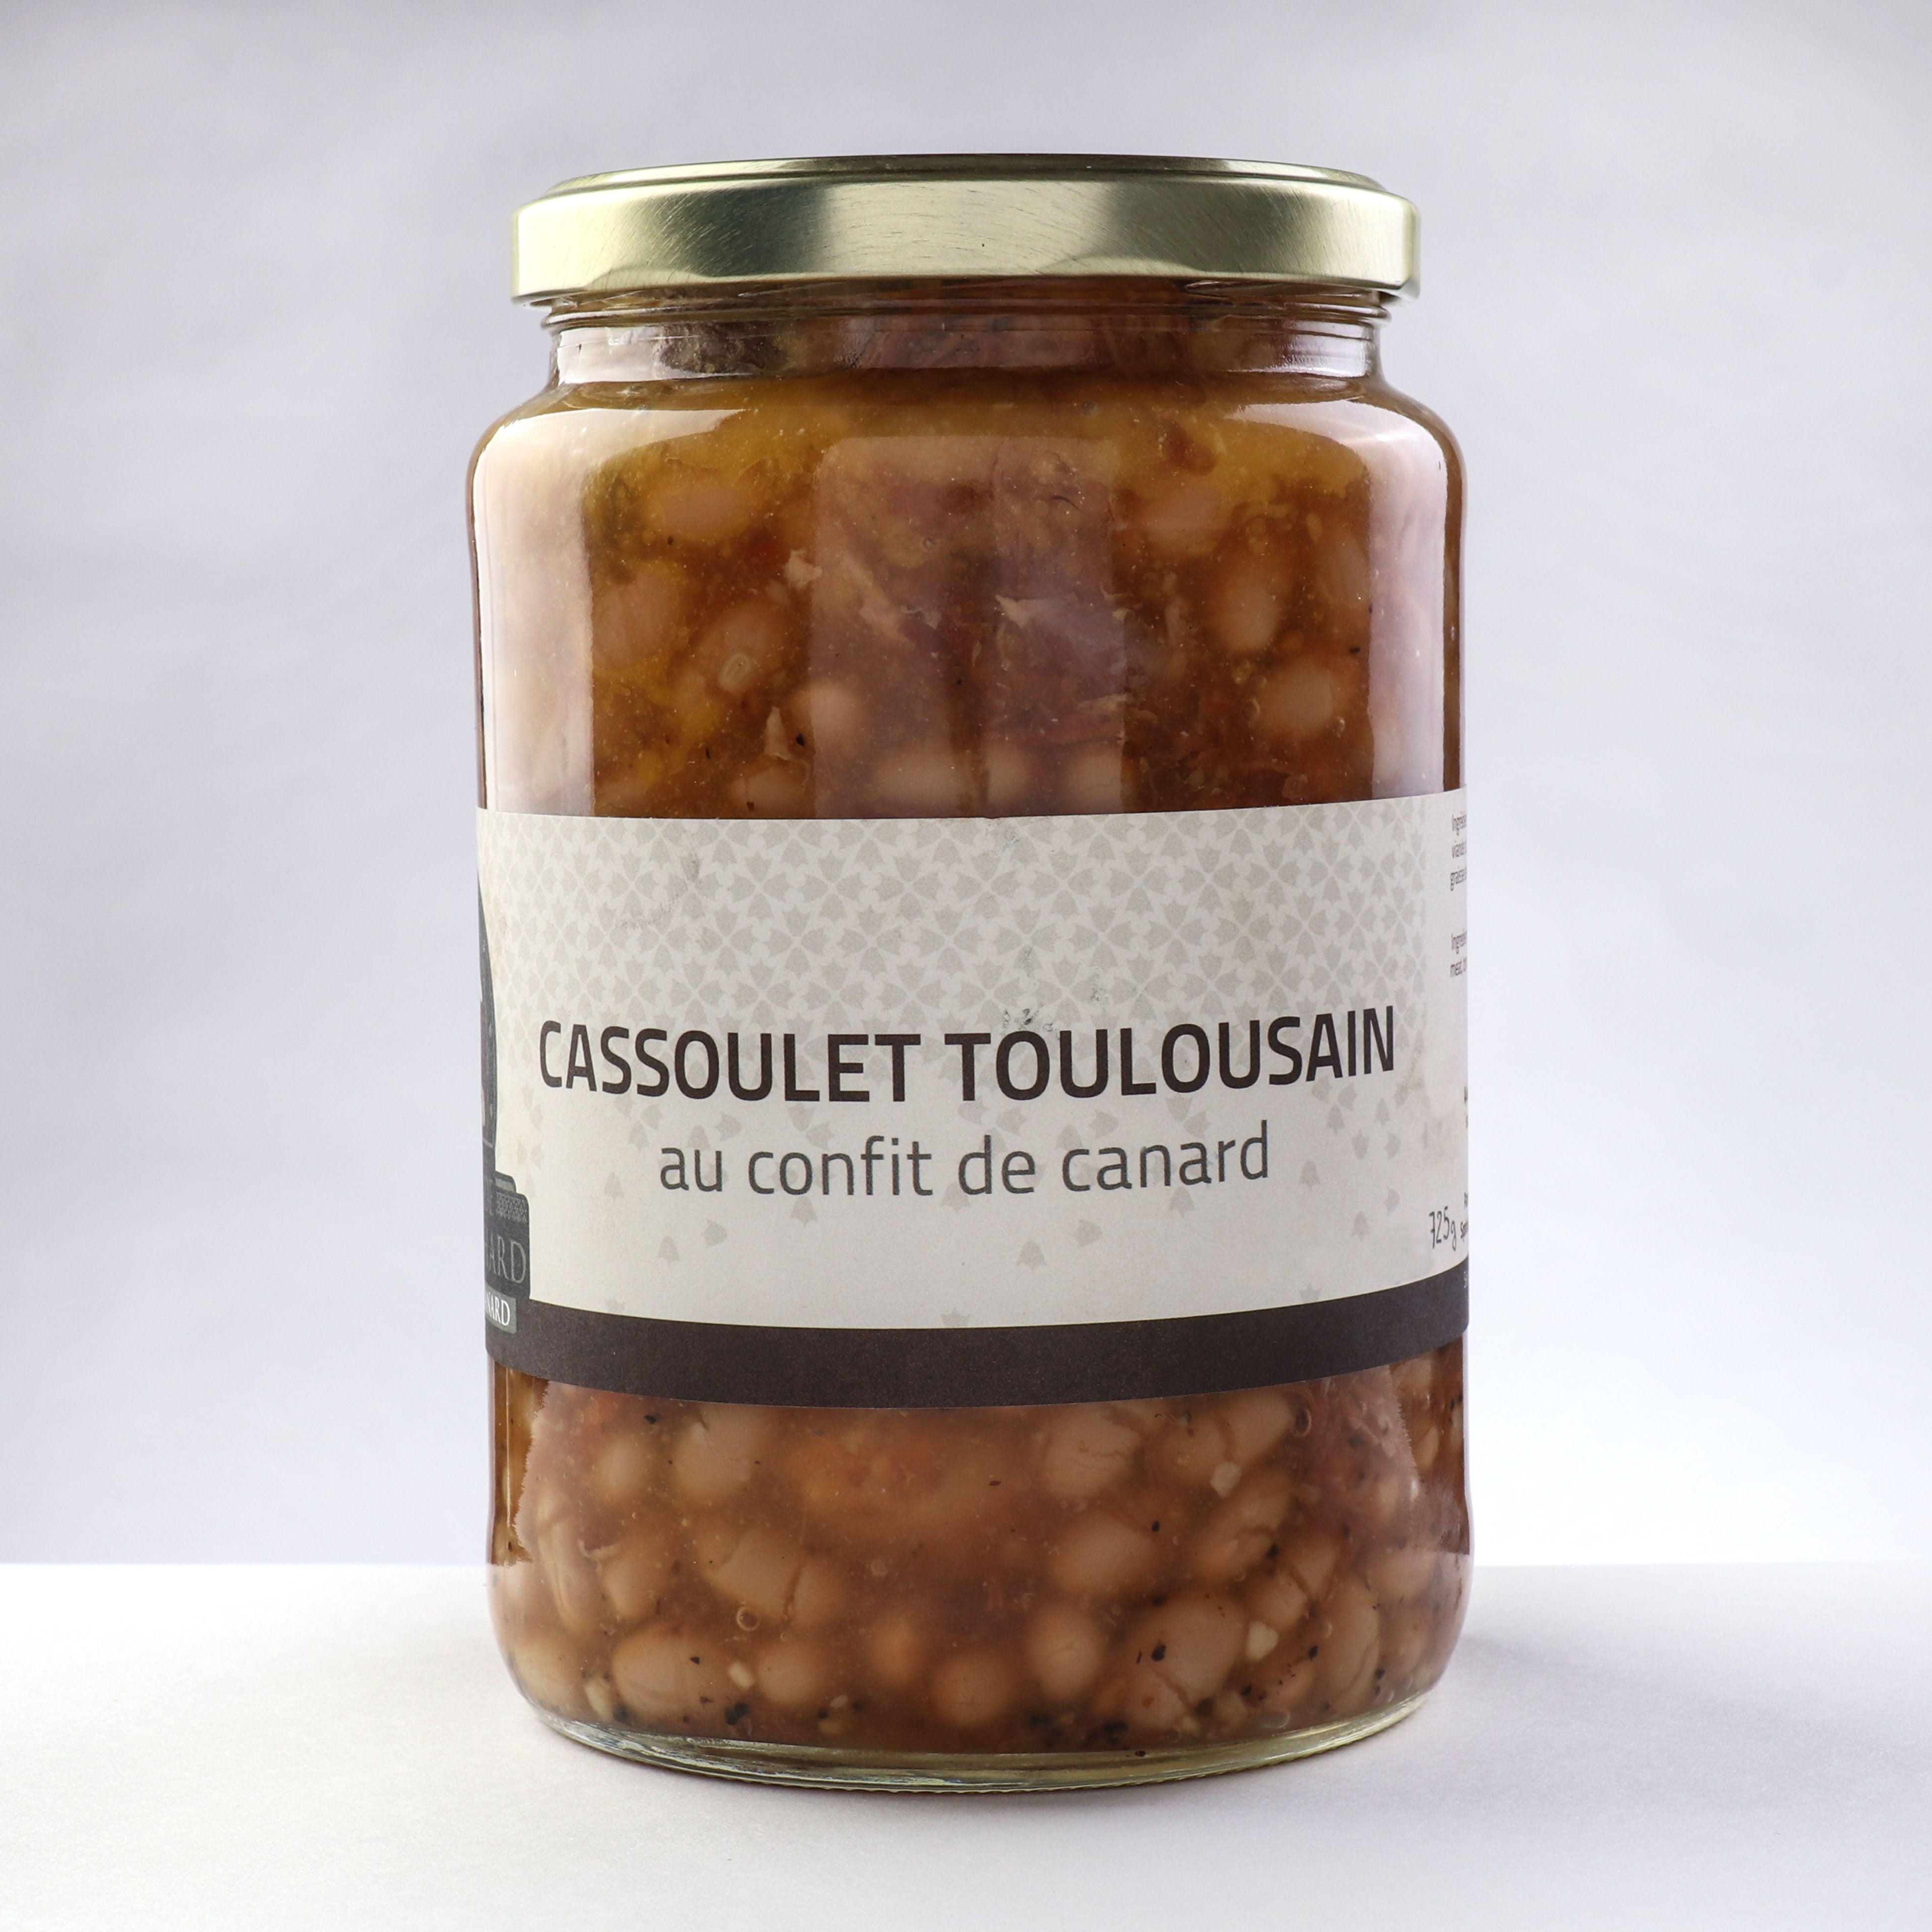 Cassoulet Toulousain - Ducs de Montrichard